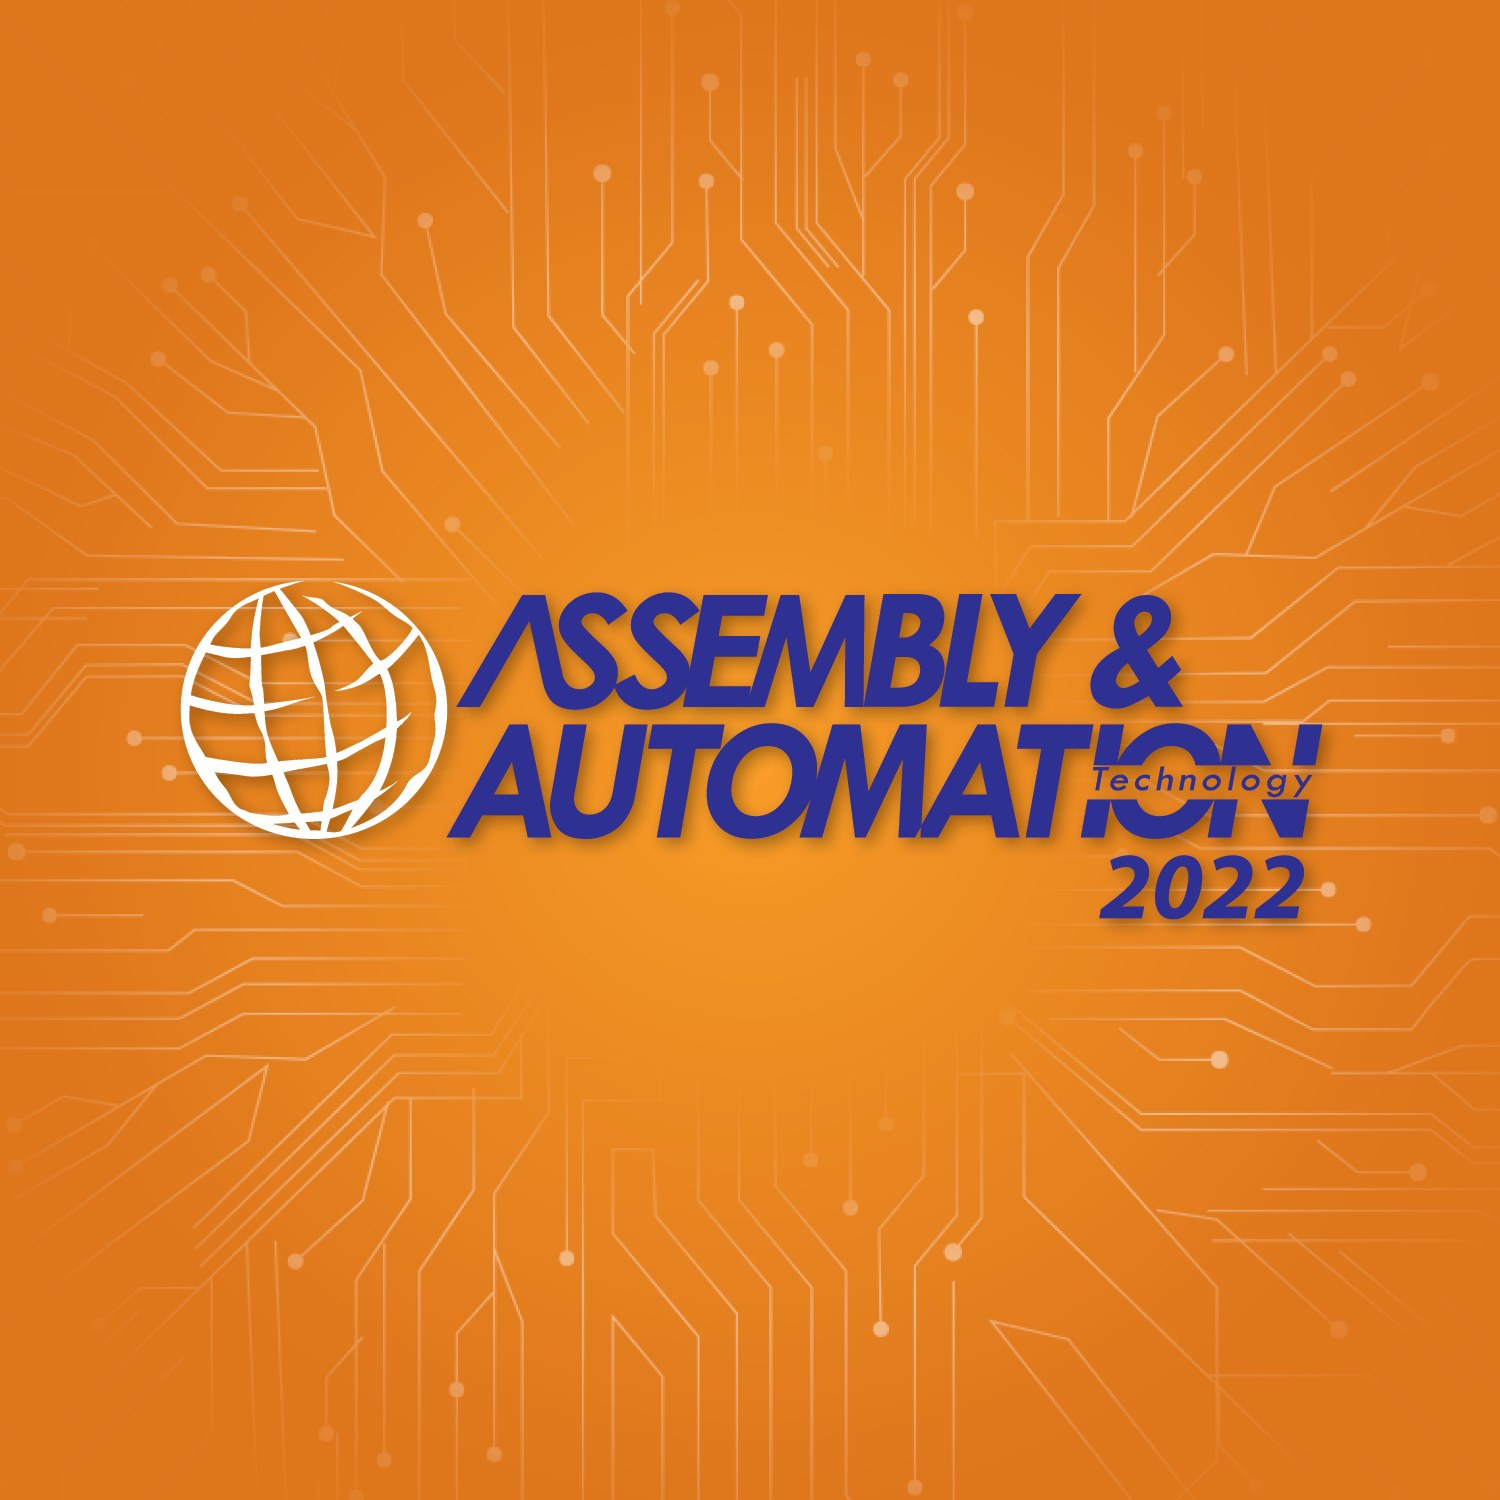 ASSEMBLY & AUTOMATION TECHNOLOGY 2022 (AST 2022)